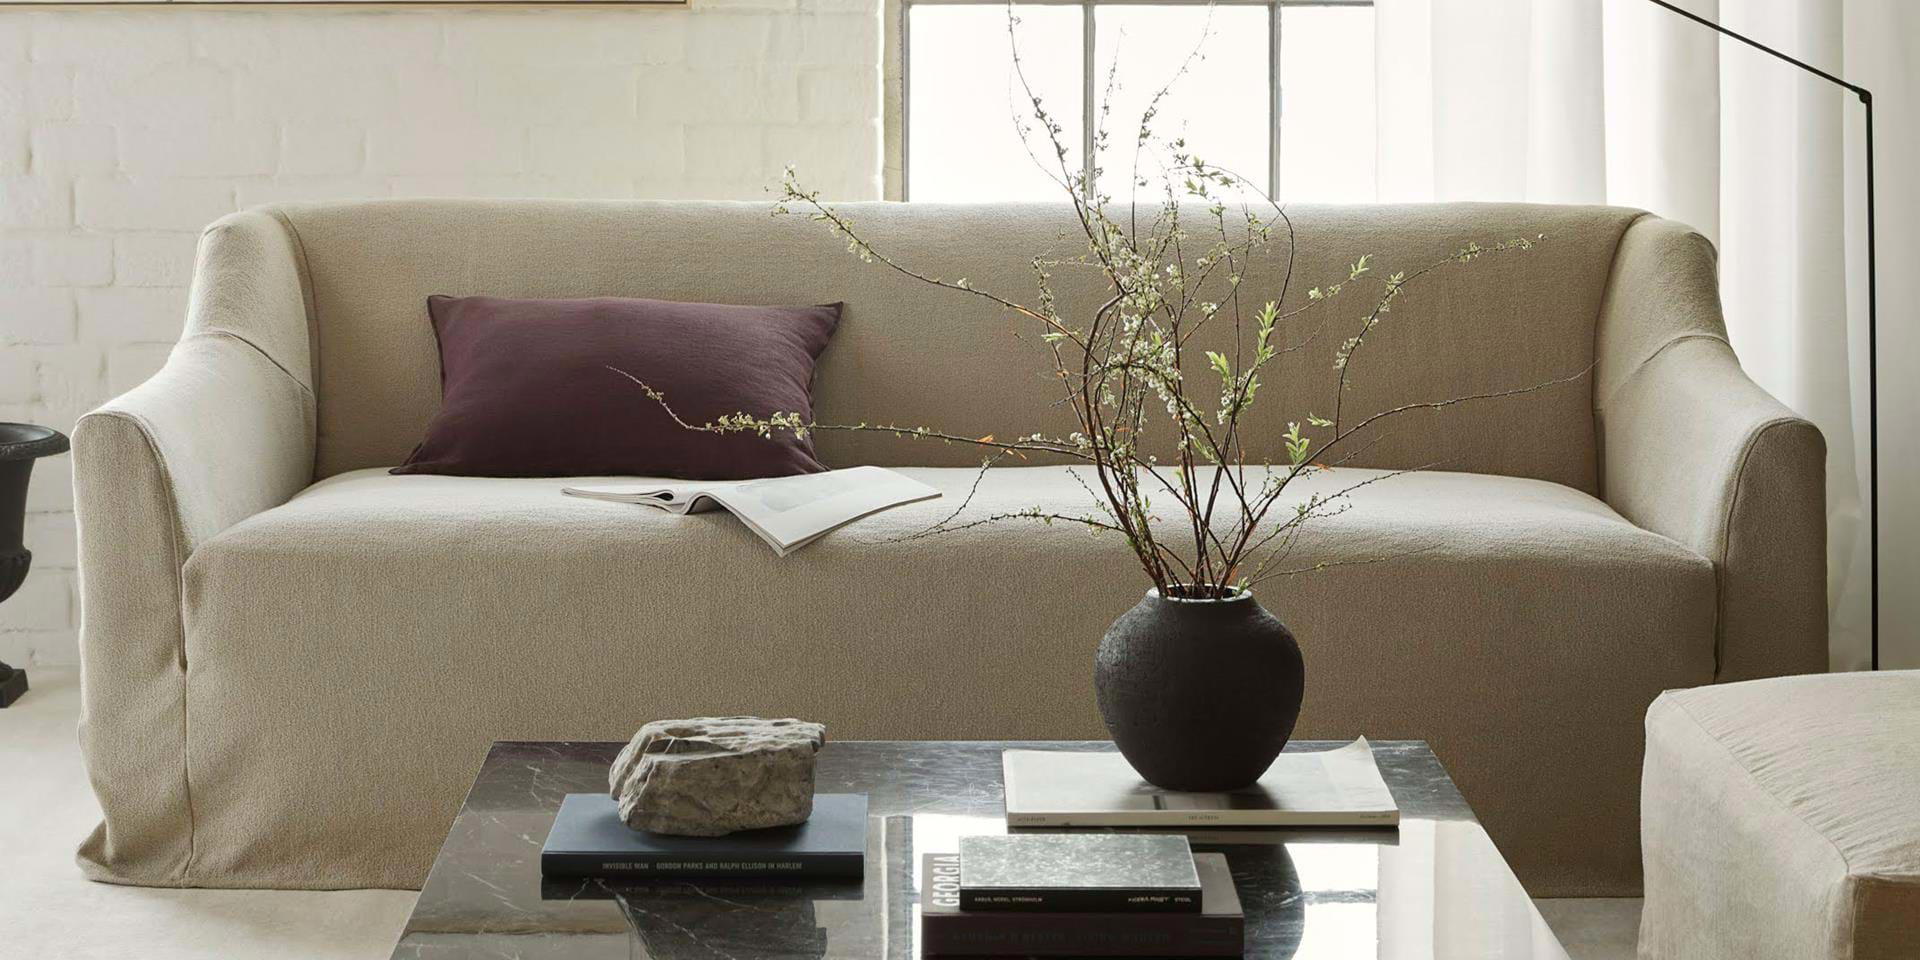 Personalizza i mobili IKEA con fodere per: divani, poltrone, sedie e letti.  – my touch design